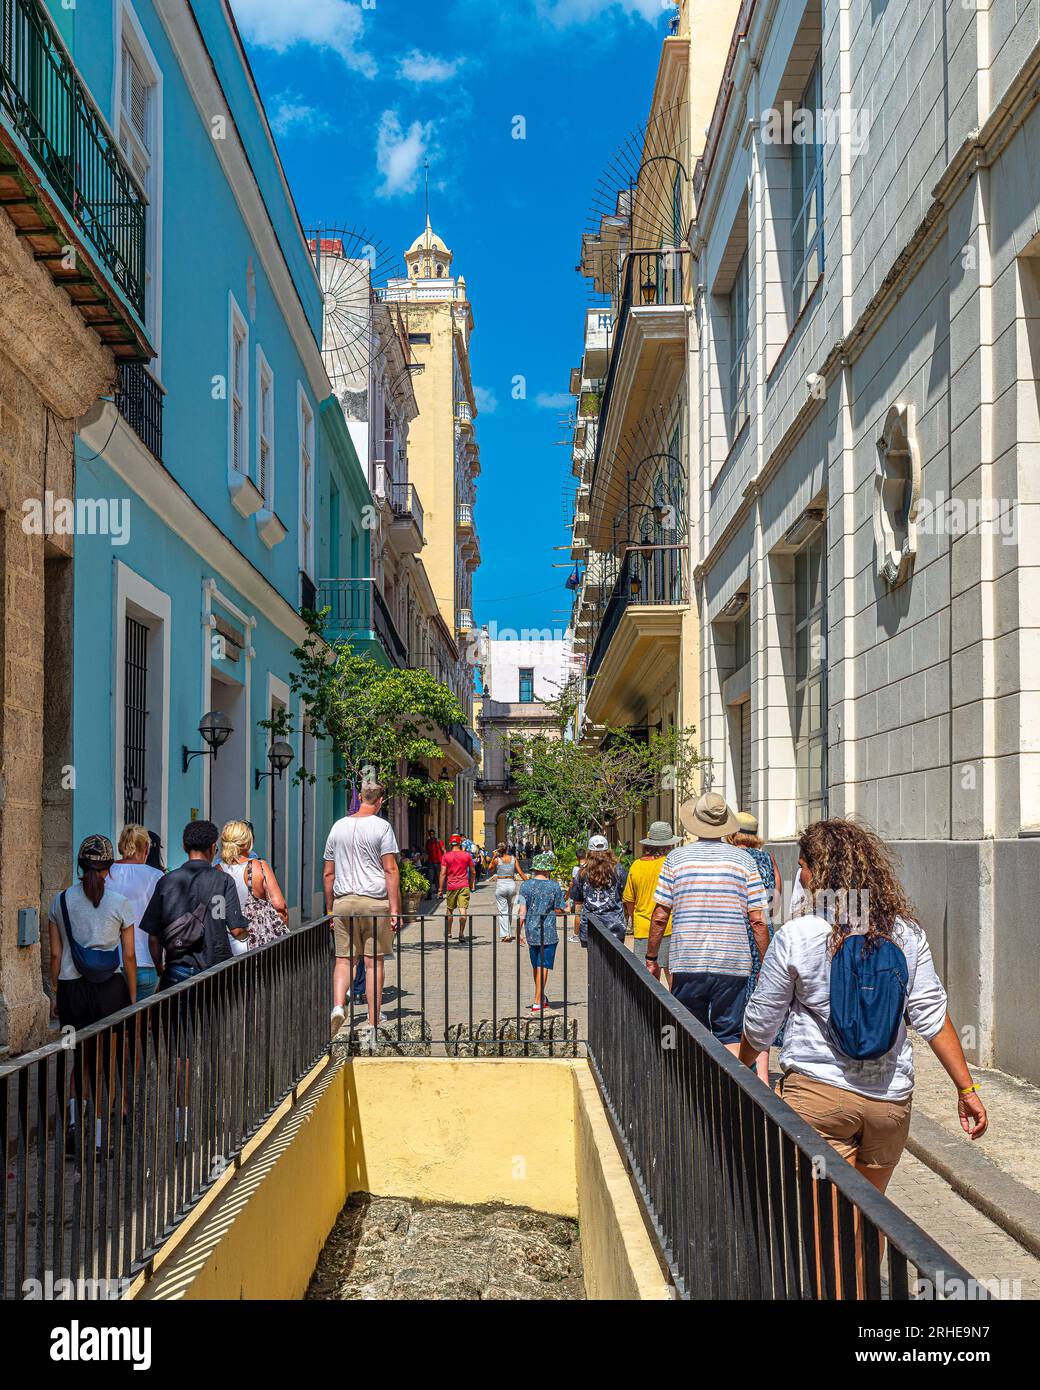 Kuba Havanna. Touristen in den Straßen der Altstadt von Havanna. Restaurants, Cafés... Auf diesen Plätzen florieren Handel, Straßenmusiker und Touristen. Stockfoto